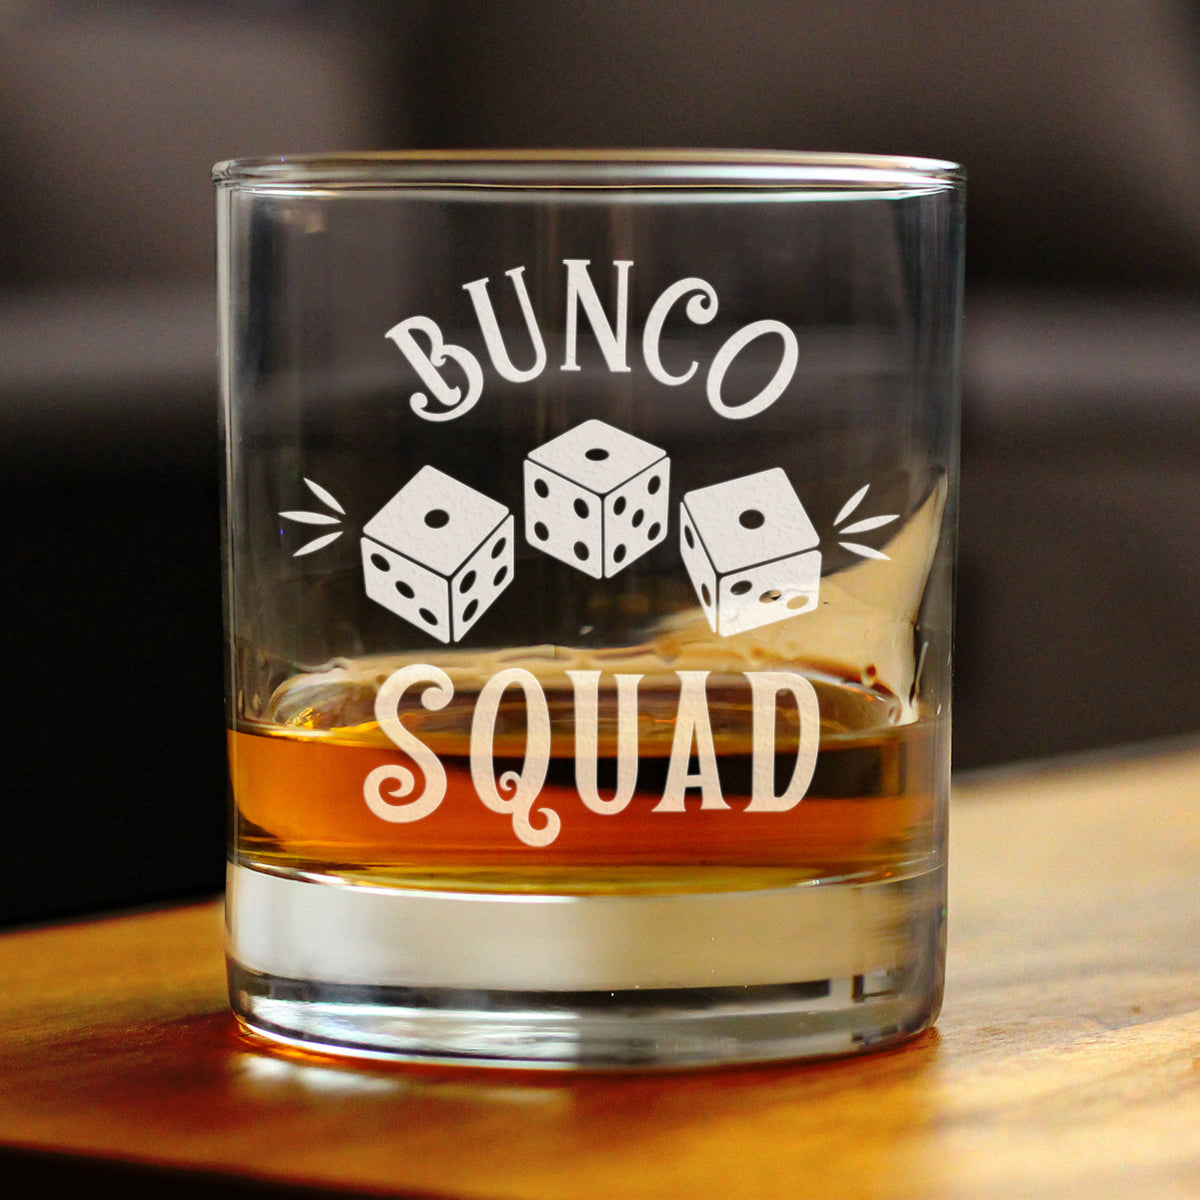 Bunco Squad Rocks Glass - Bunco Decor and Bunco Gifts for Women - 10.25 Oz Glasses